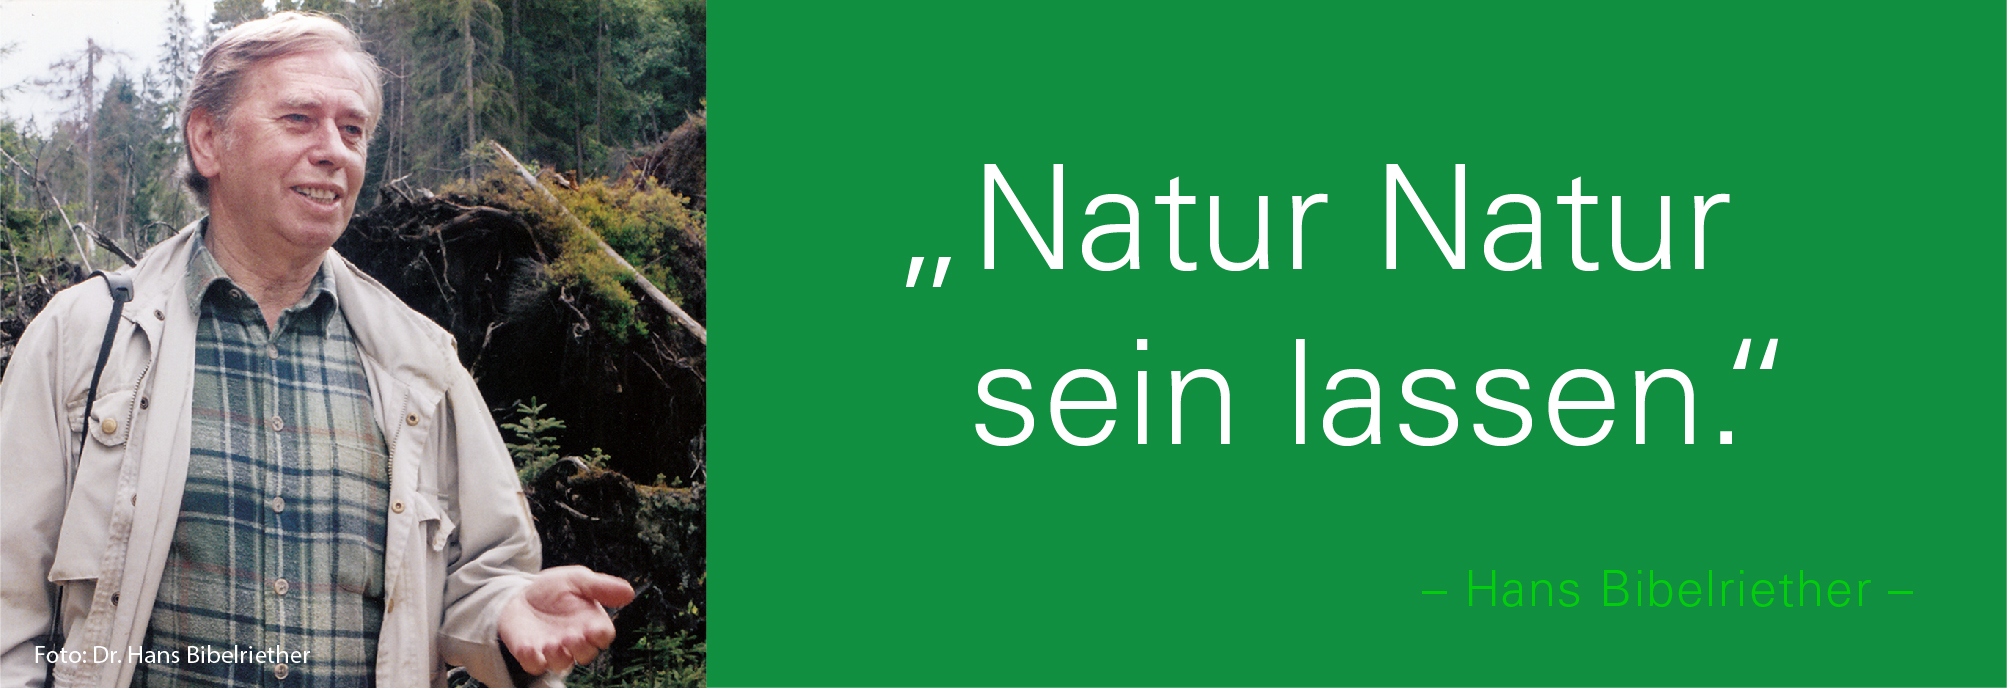 Portraitbild von Hans Bibelriether mit seinem Zitat: Natur Natur sein lassen.